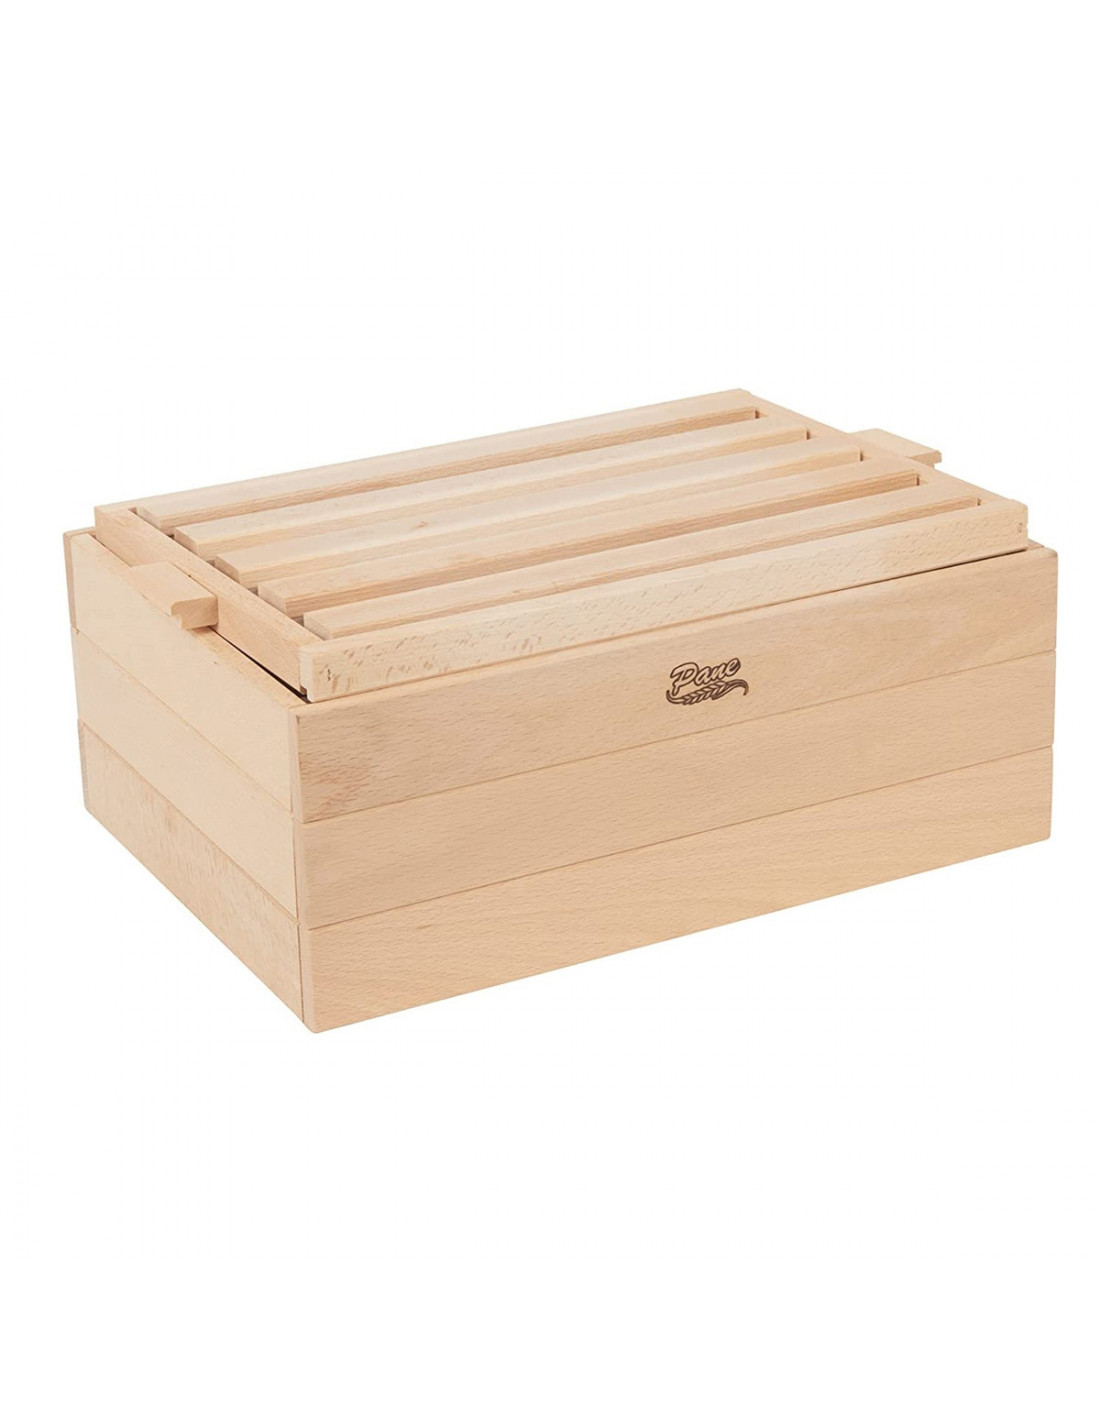 Portapane con tagliere per pane in legno Casa Collection - online